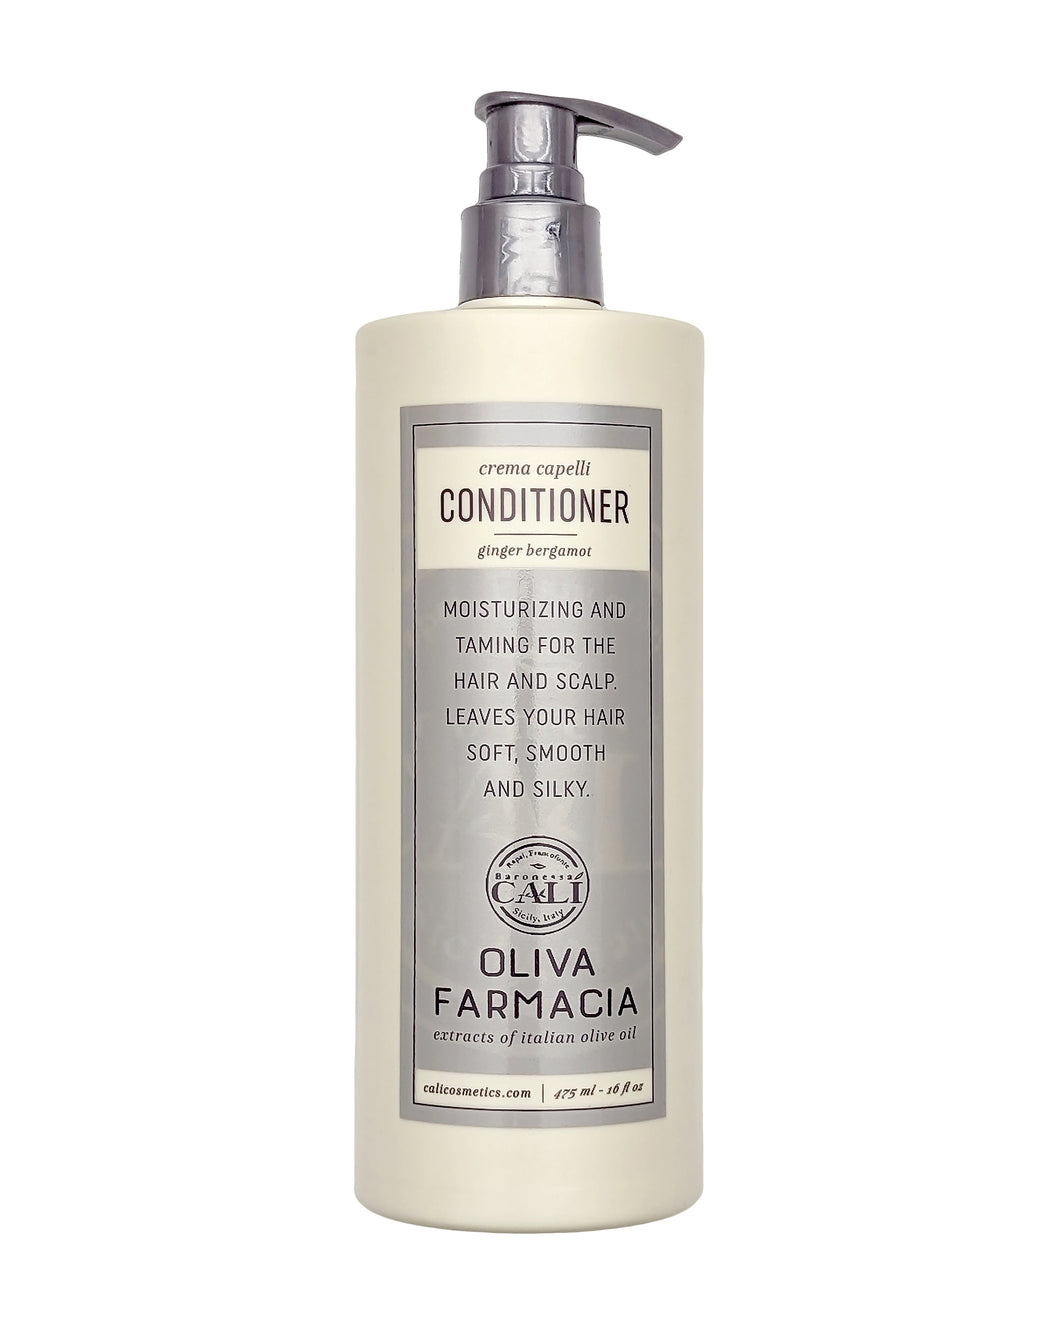 Oliva Farmacia CREMA CAPELLI Hair Conditioner 475ml/16 fl oz